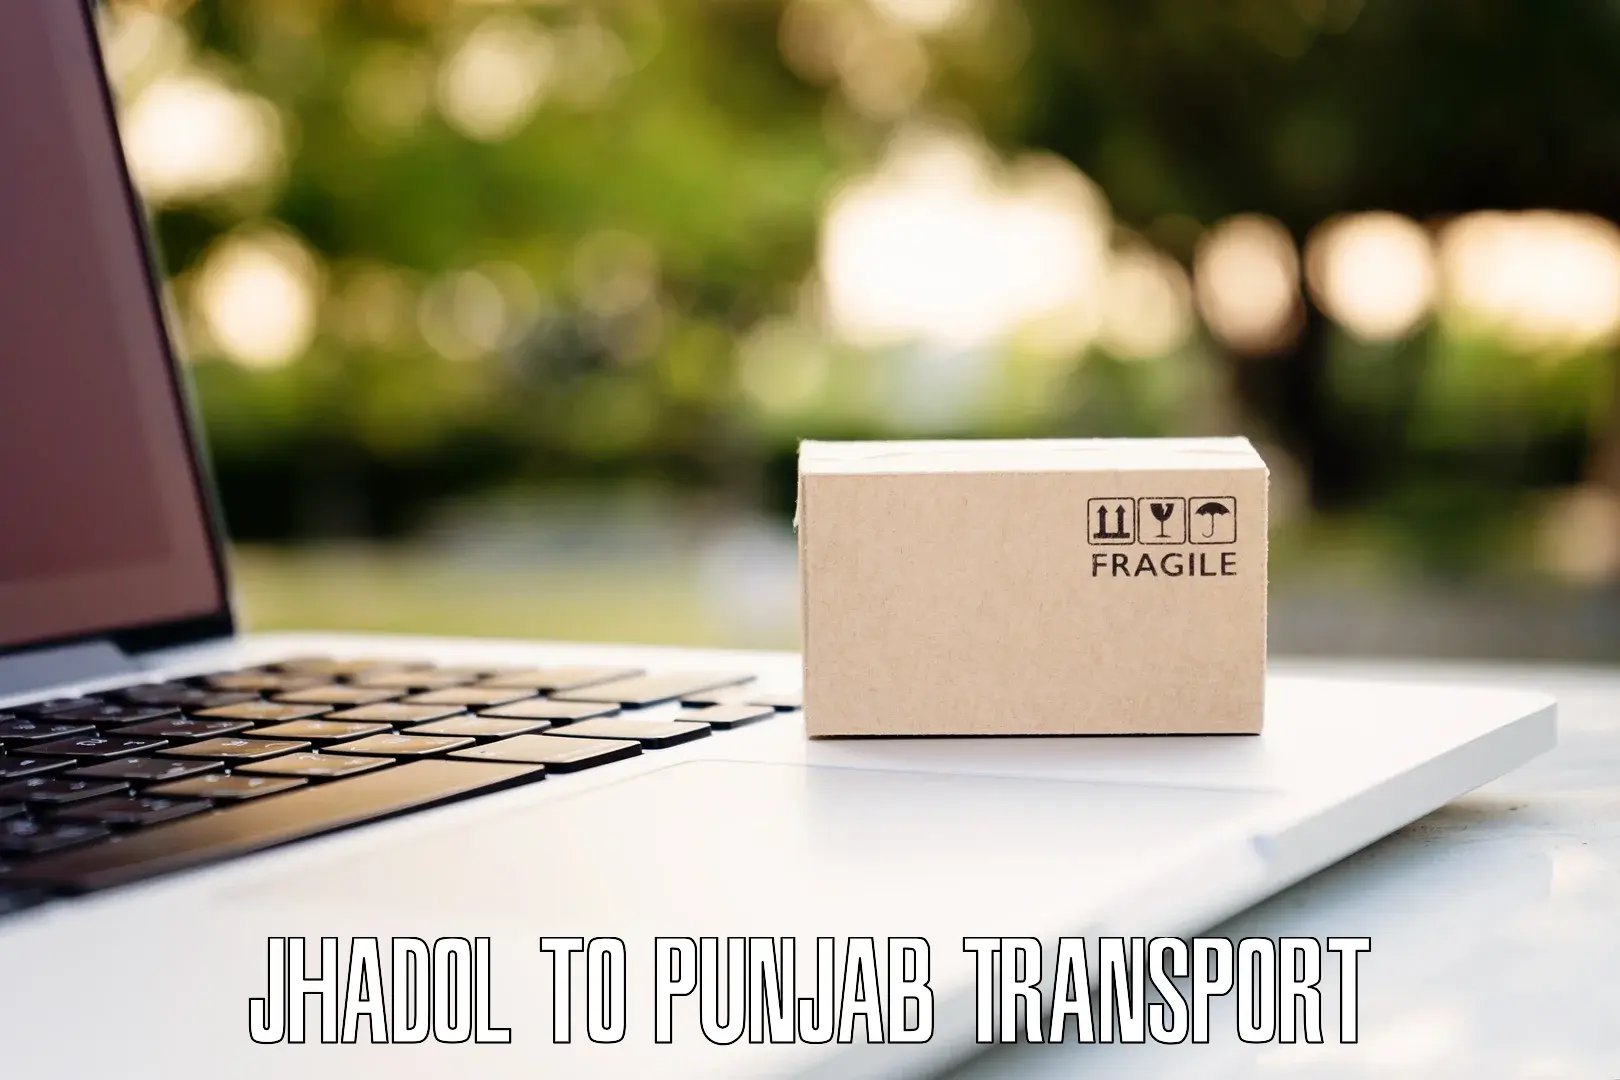 Online transport booking Jhadol to Raikot